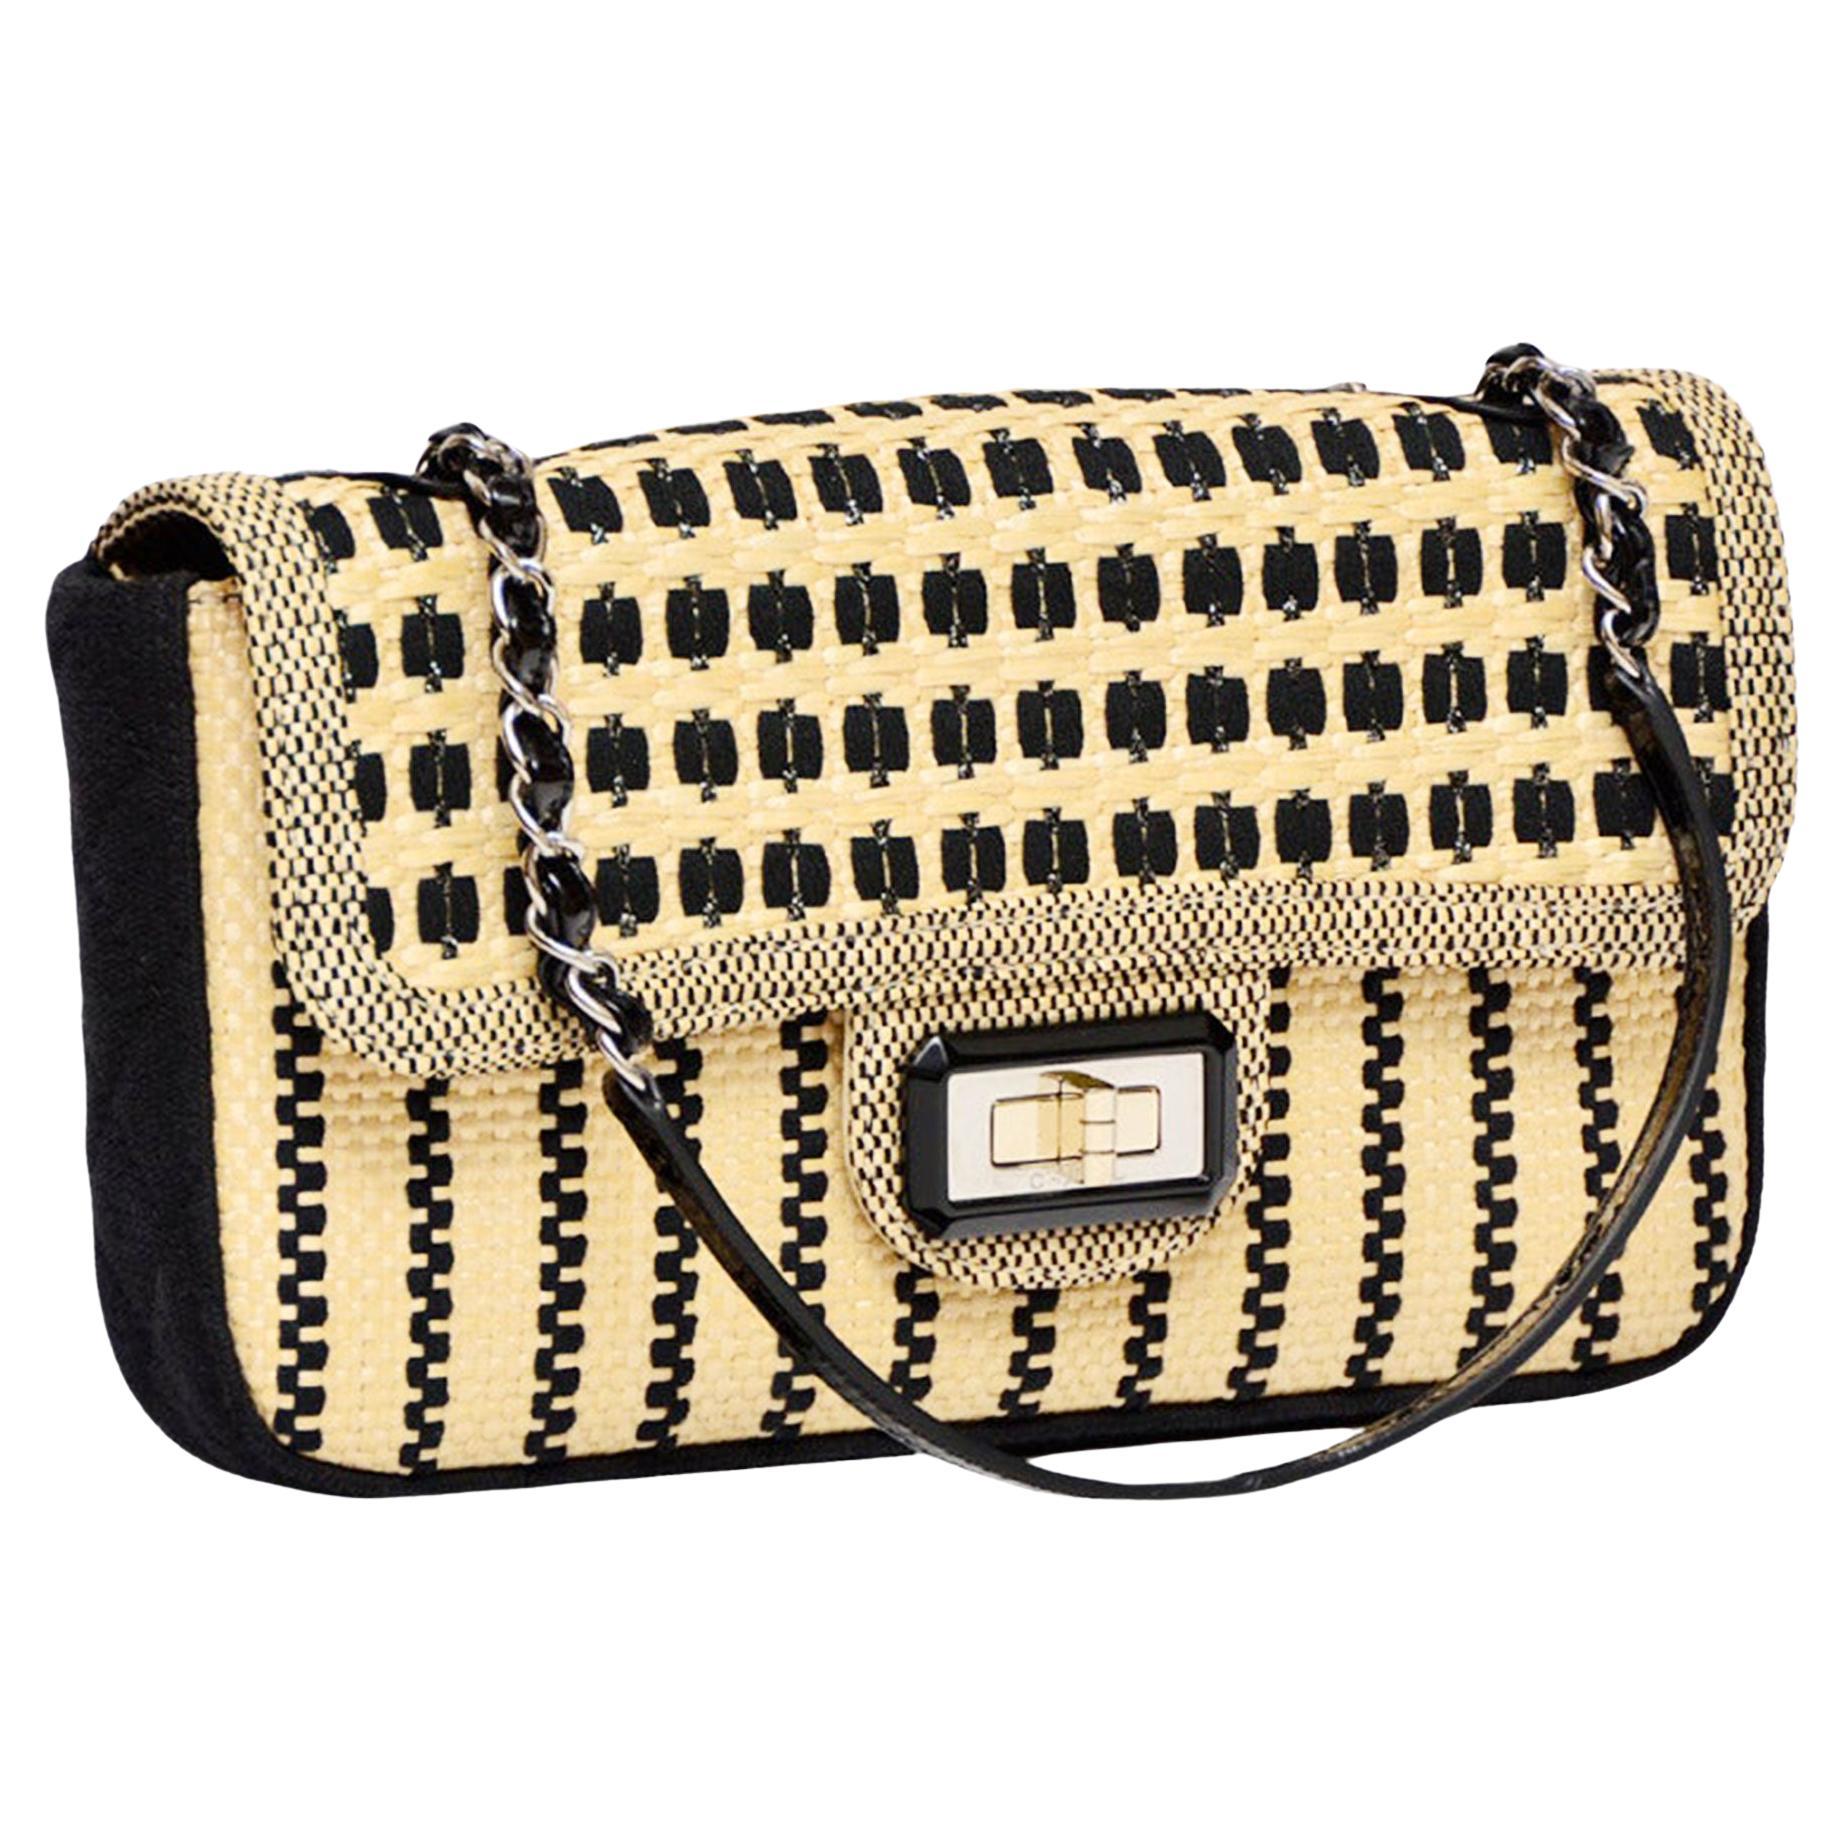 Chanel 2012 Classic Flap Limited Edition Beige & Black Raffia Straw Canvas Bag